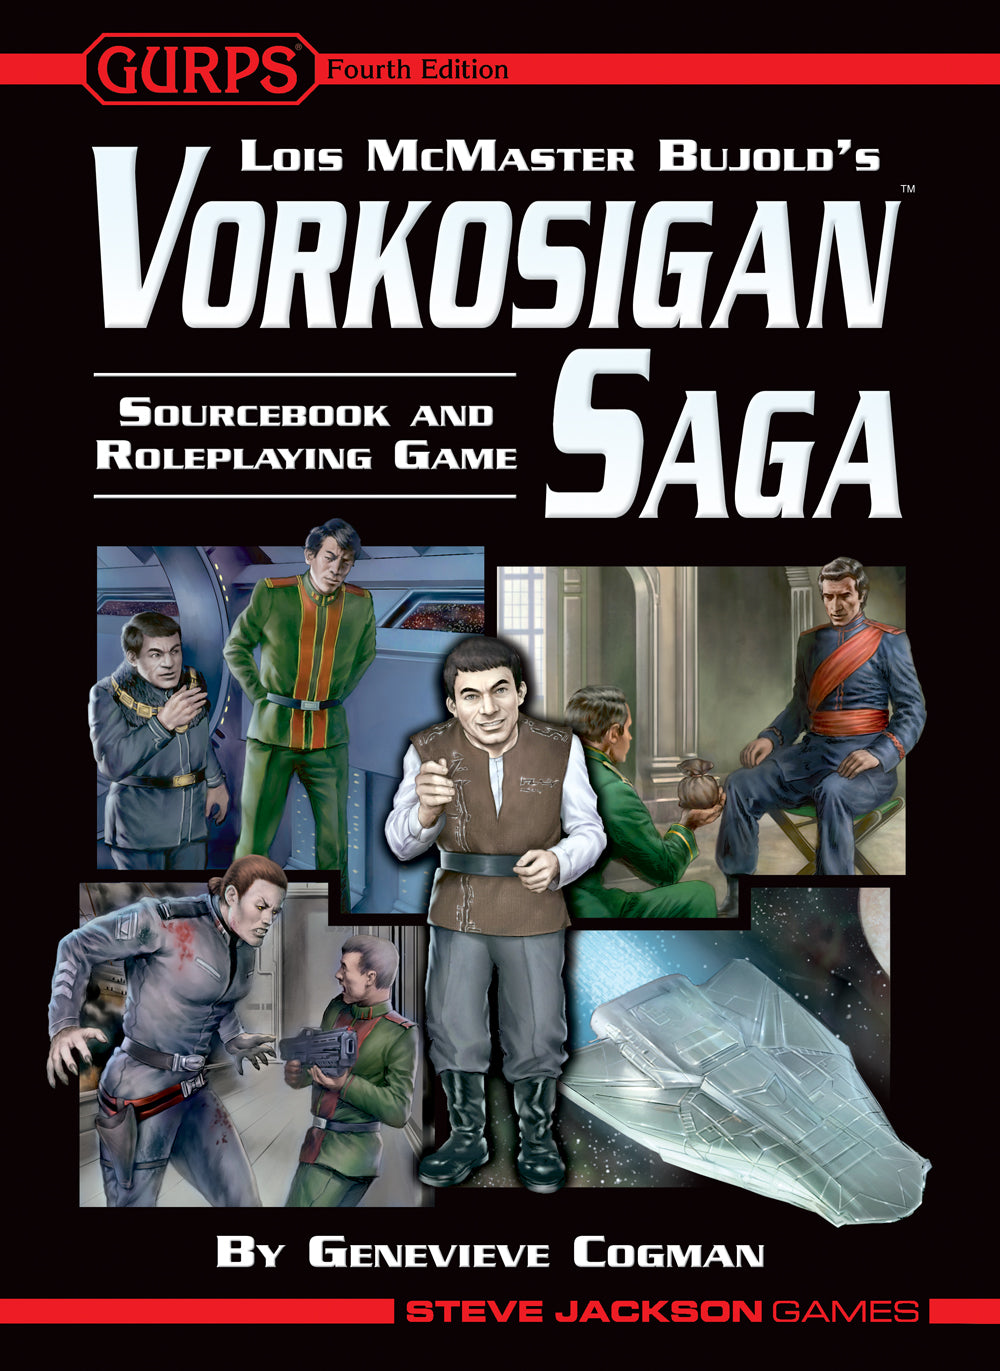 Vorkosigan Saga Sourcebook and Roleplaying Game